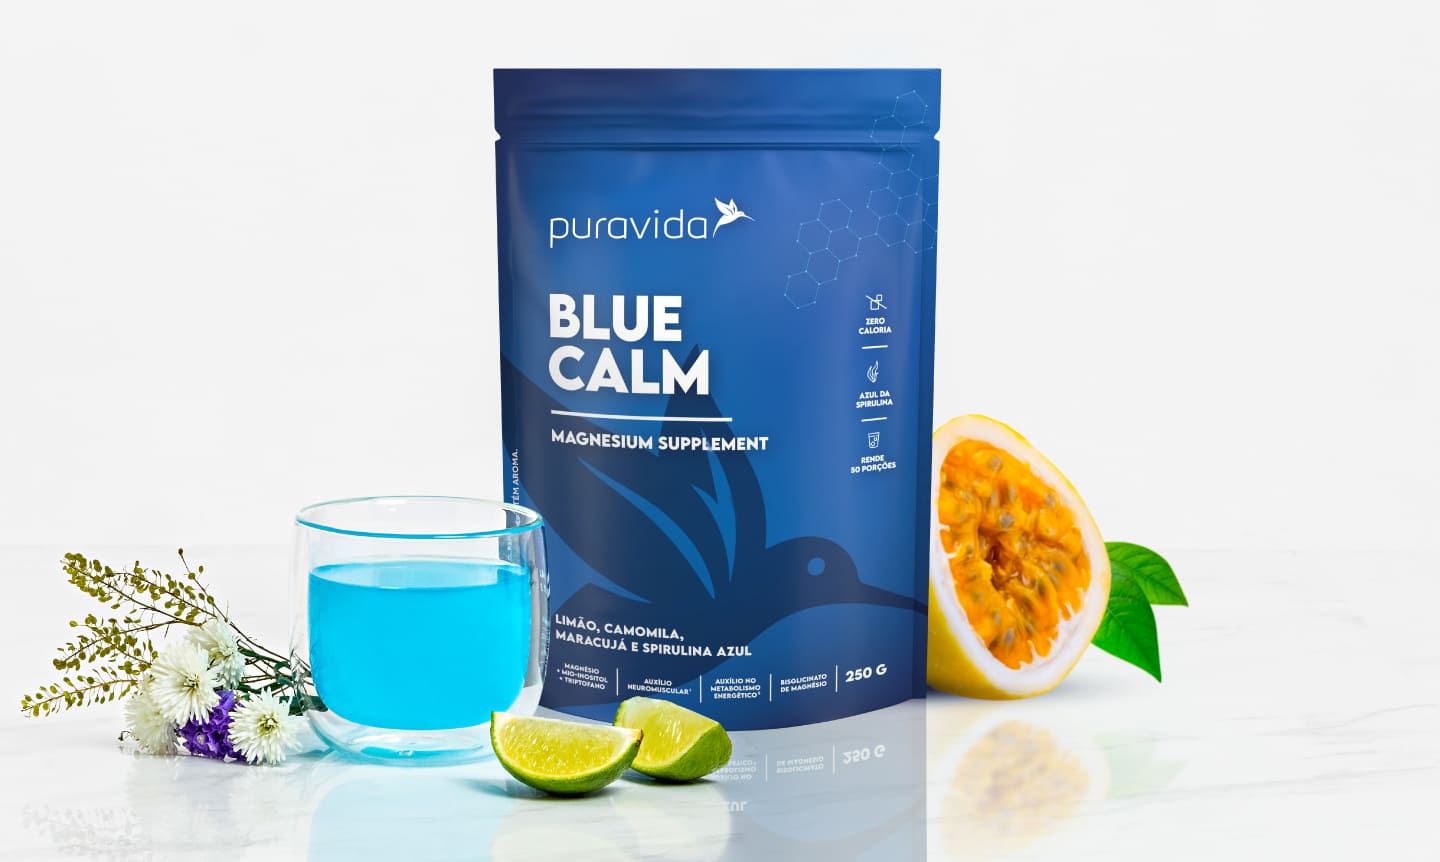 Imagem do produto Blue Calm, produto no copo, e frutas como Limão e Maracujá ao lado